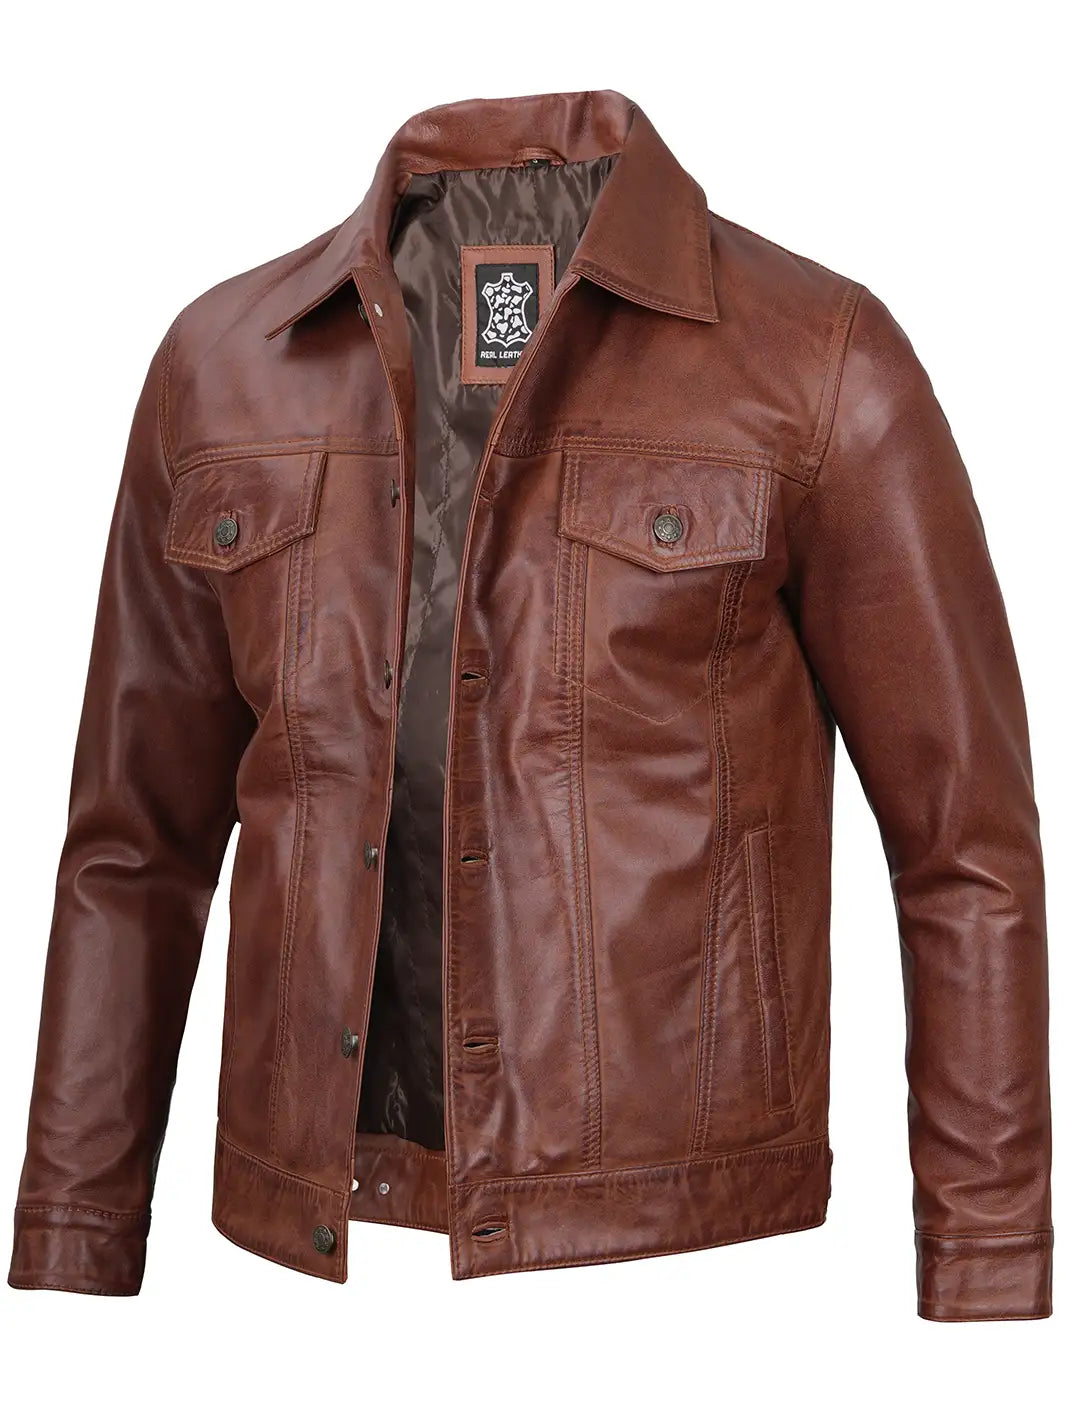 Mens cognac leather jacket